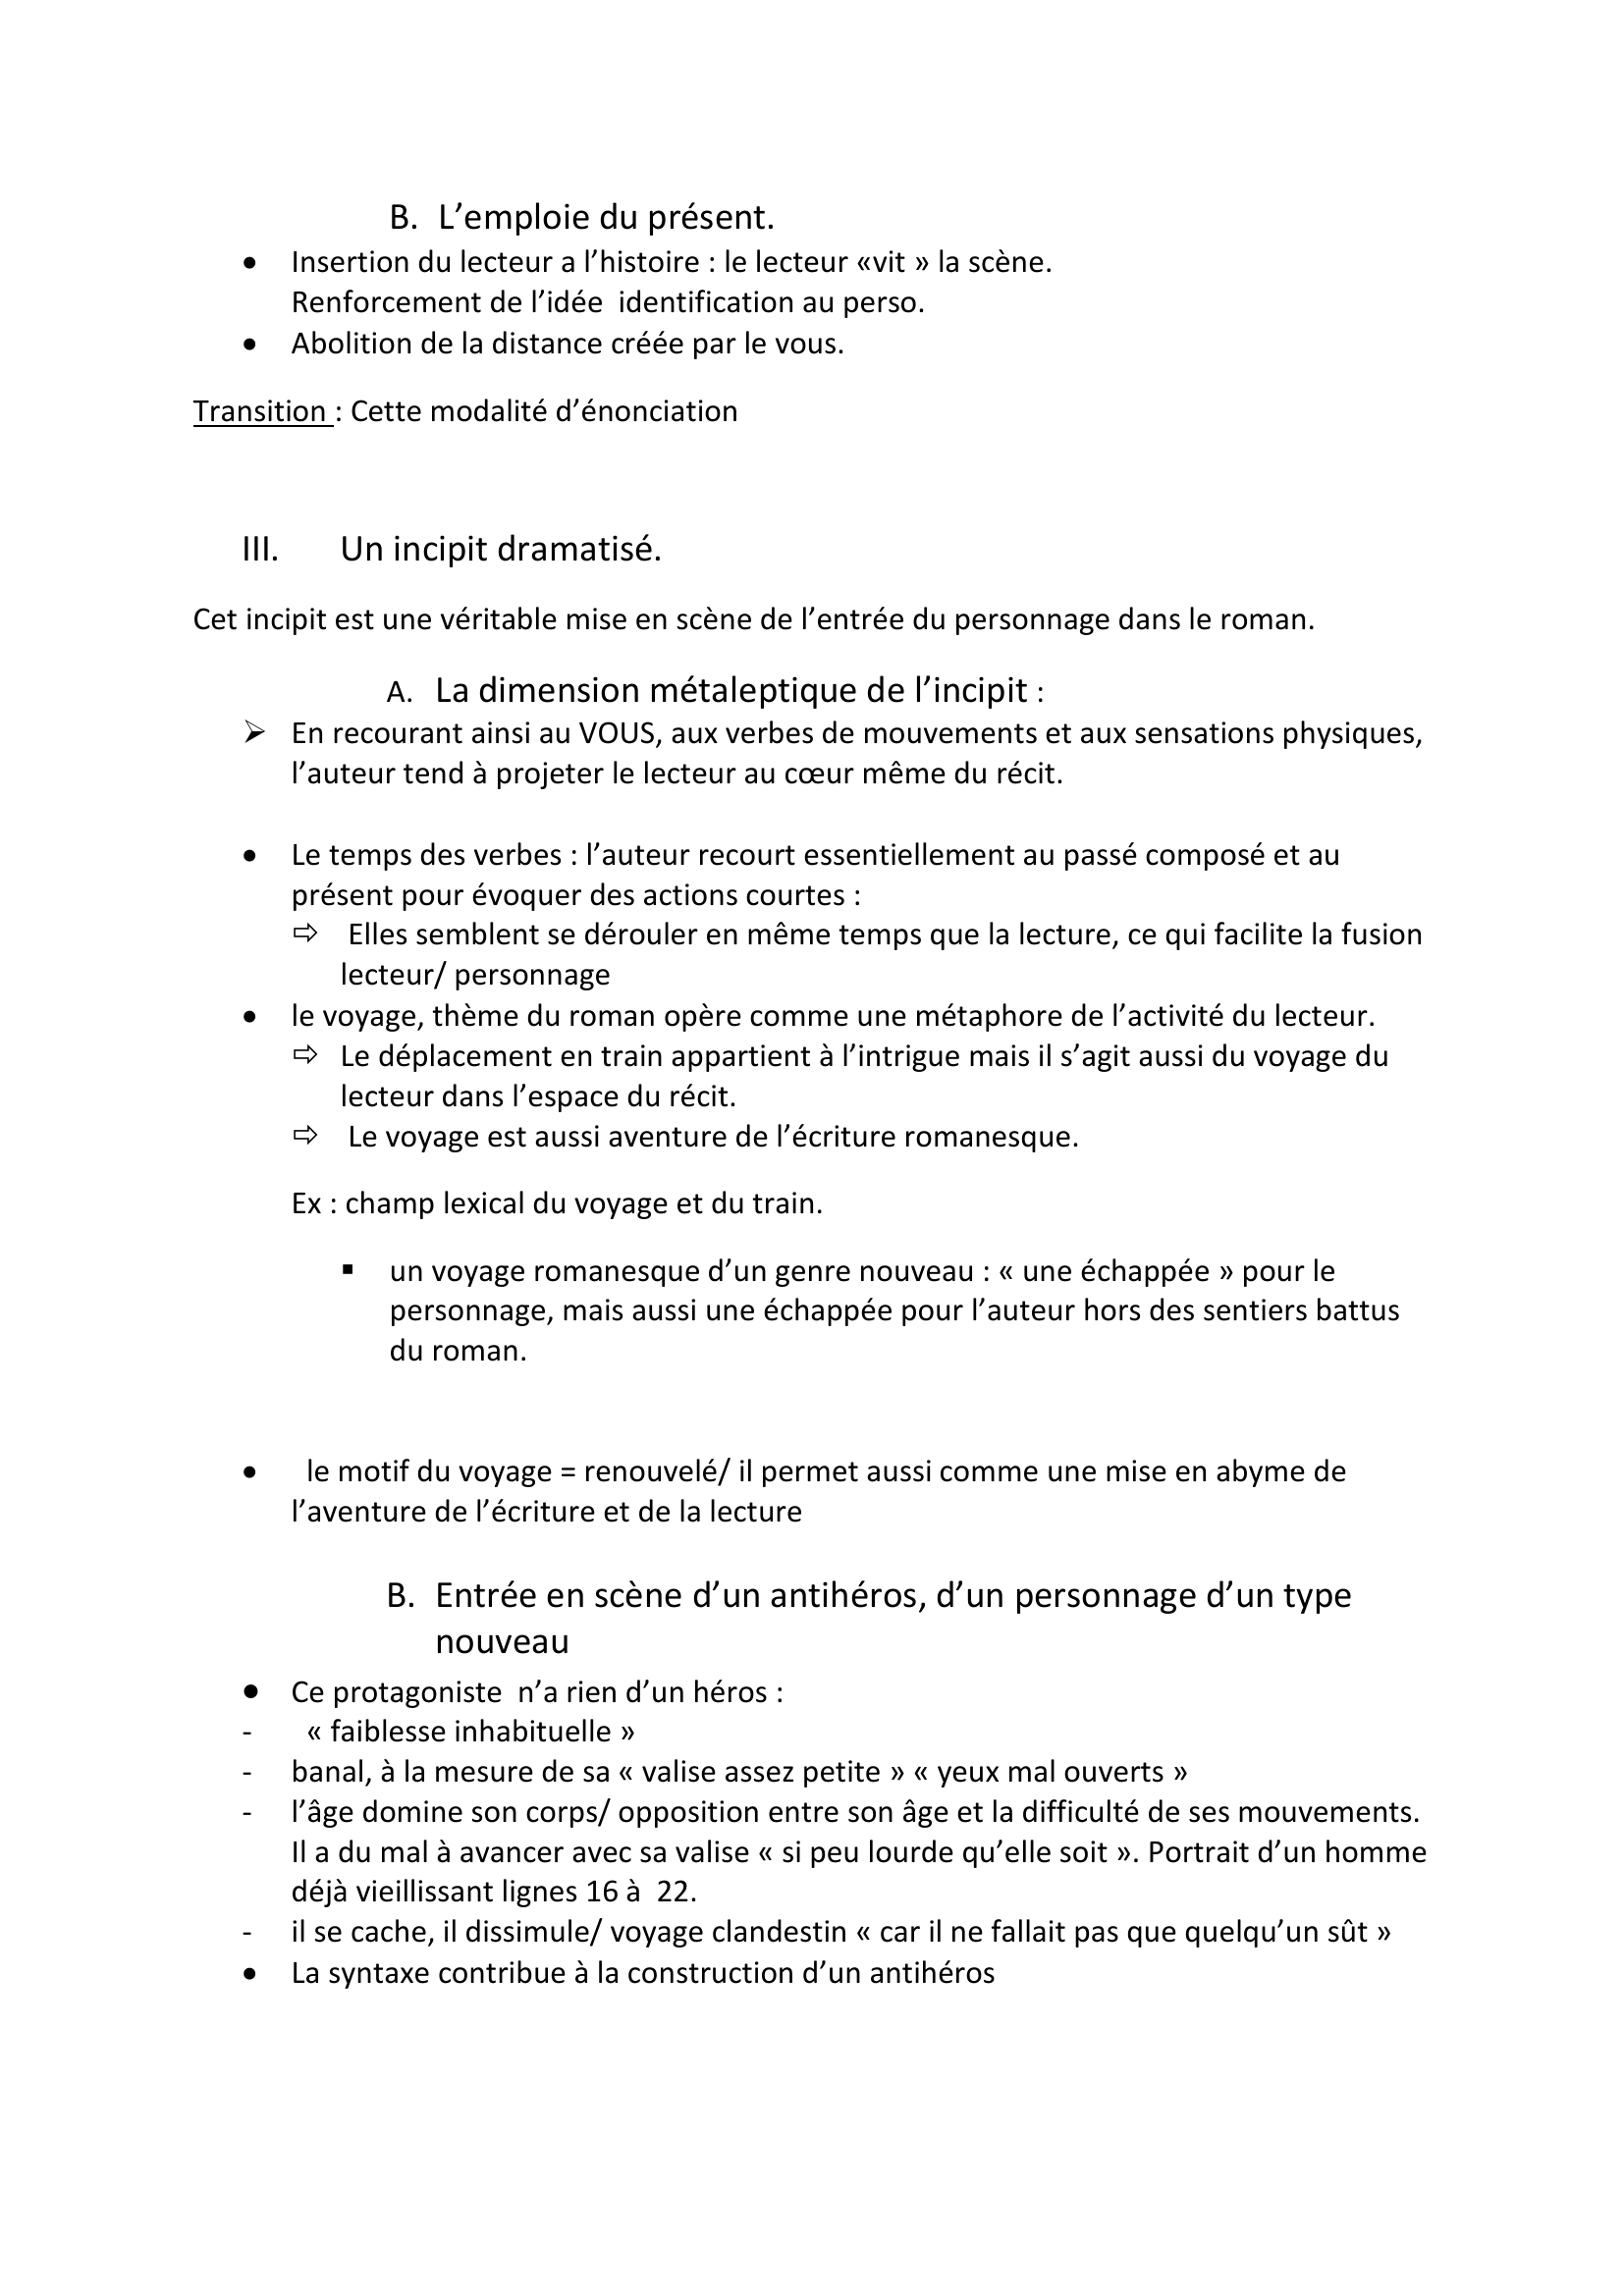 Prévisualisation du document Michel BUTOR, La Modification, incipit